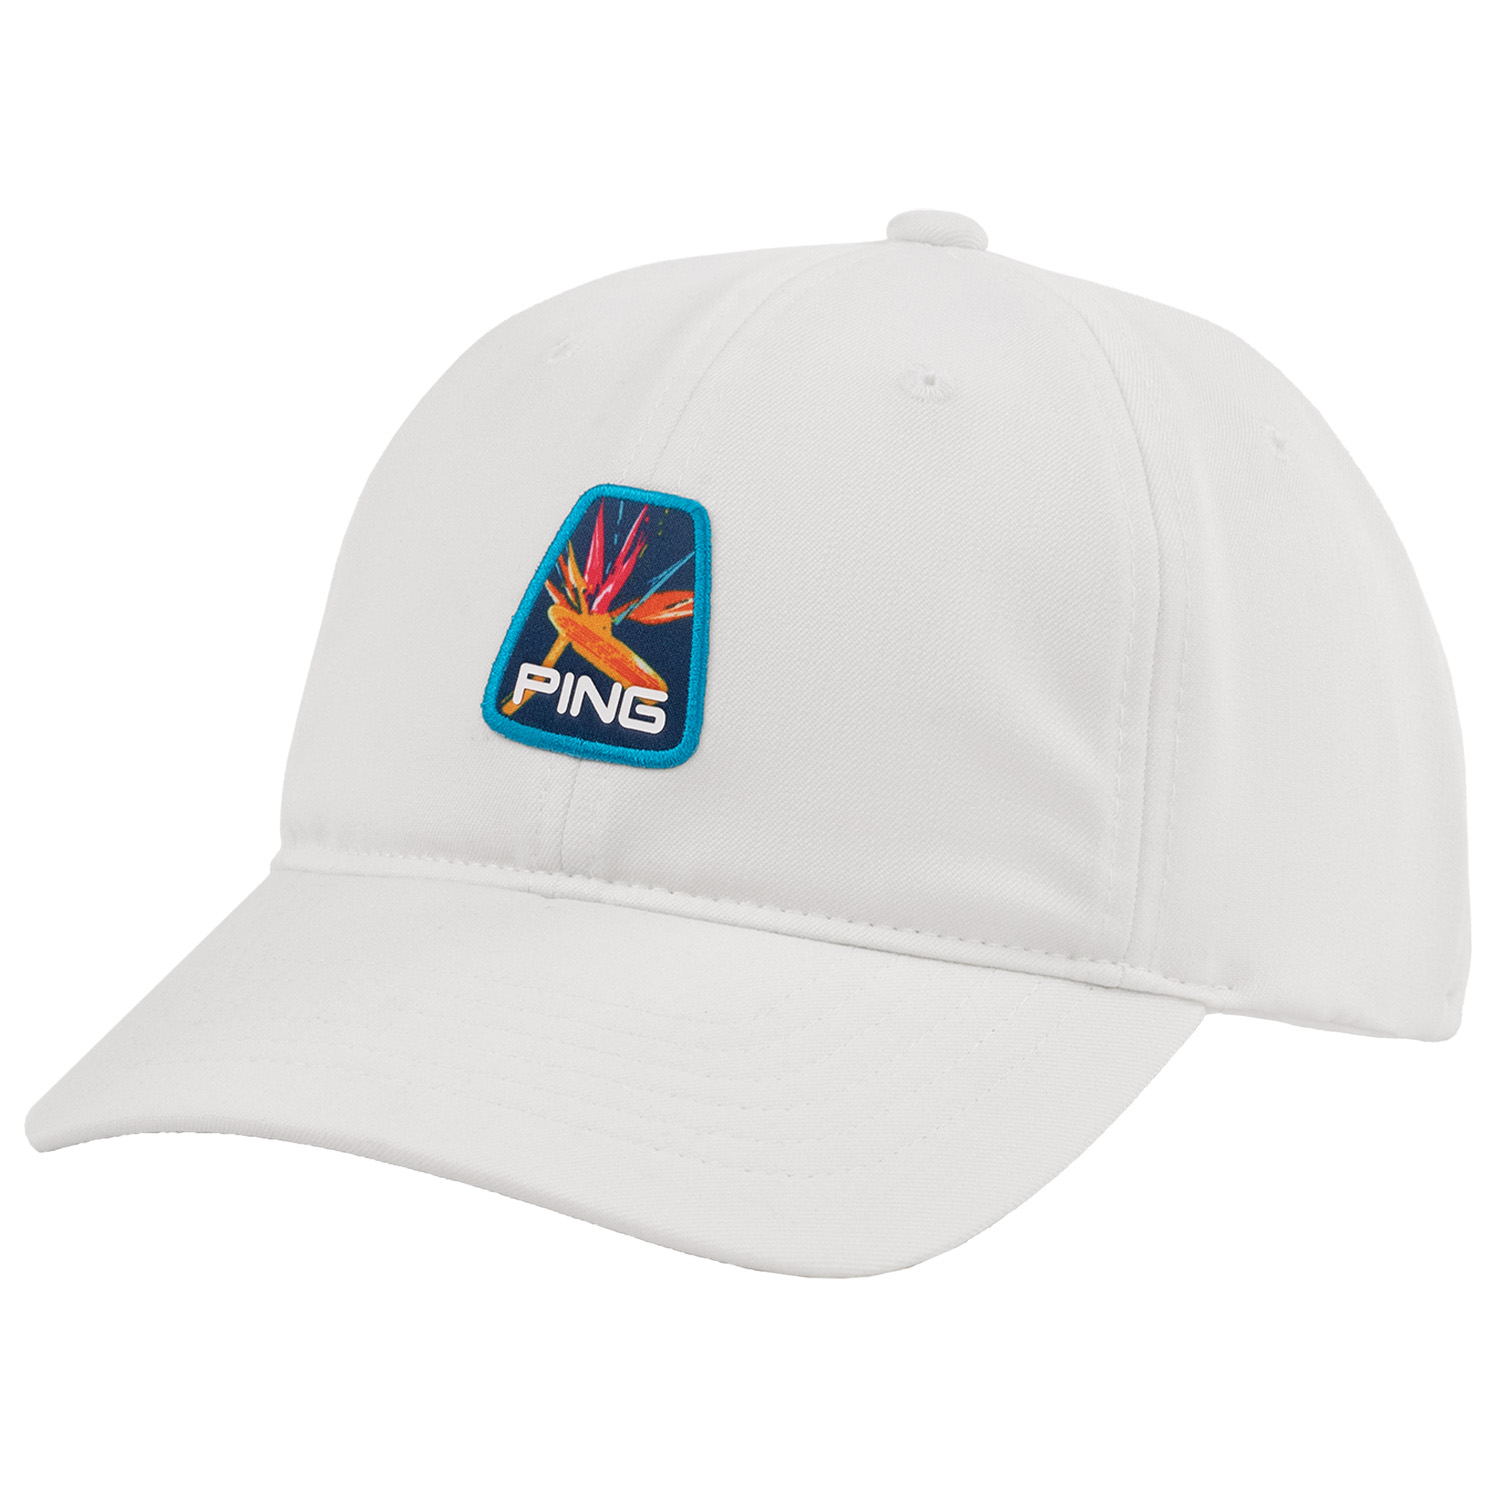 PING Limited Edition Baseball Cap